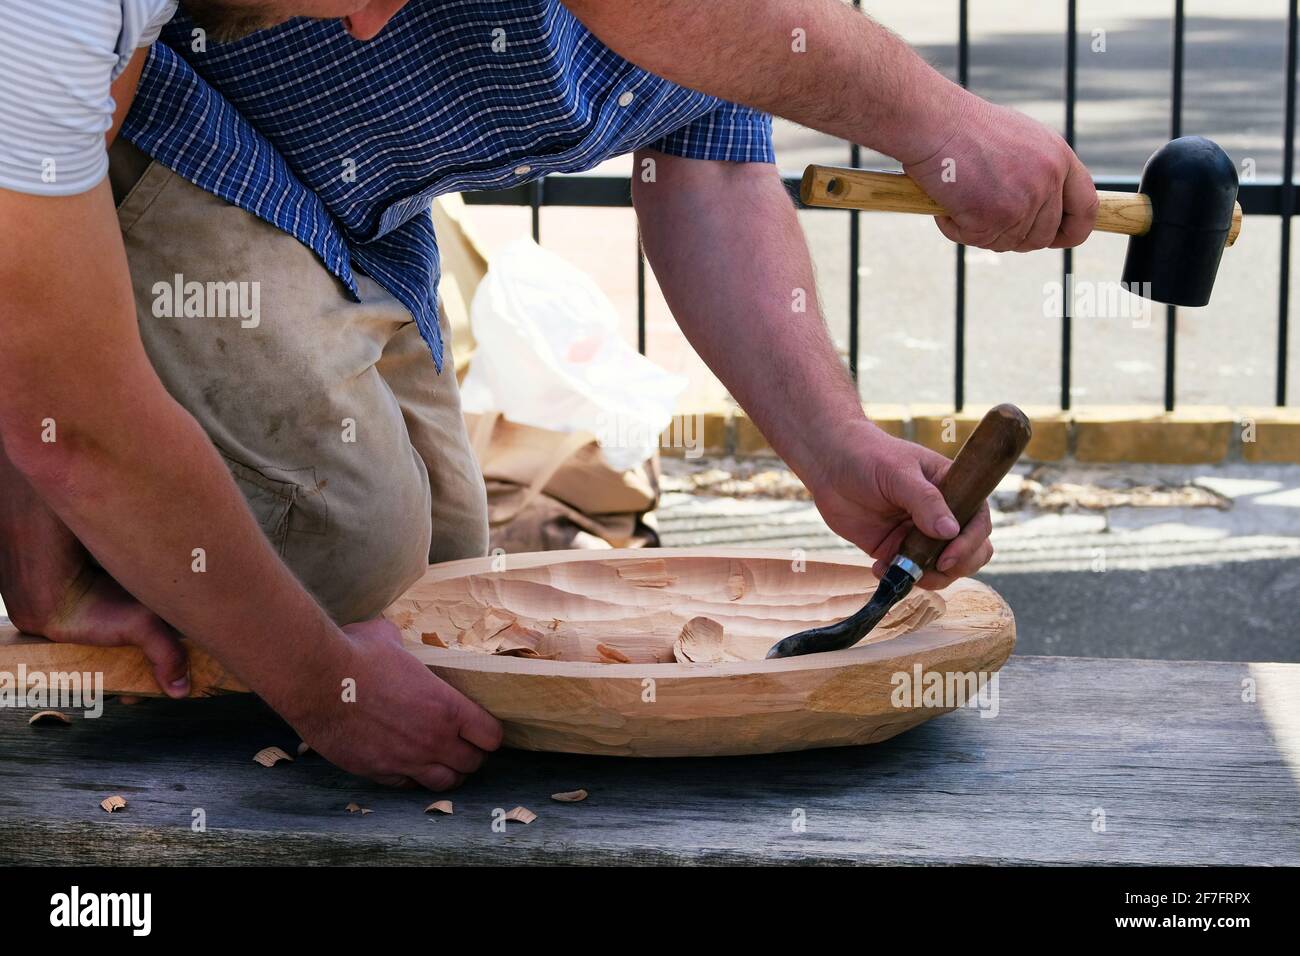 Scultura in legno. Due falegnami professionisti travano il prodotto in legno con un utensile per la lavorazione del legno, le mani si avvicinano. Concetto di carpenteria e artigianato. Foto Stock